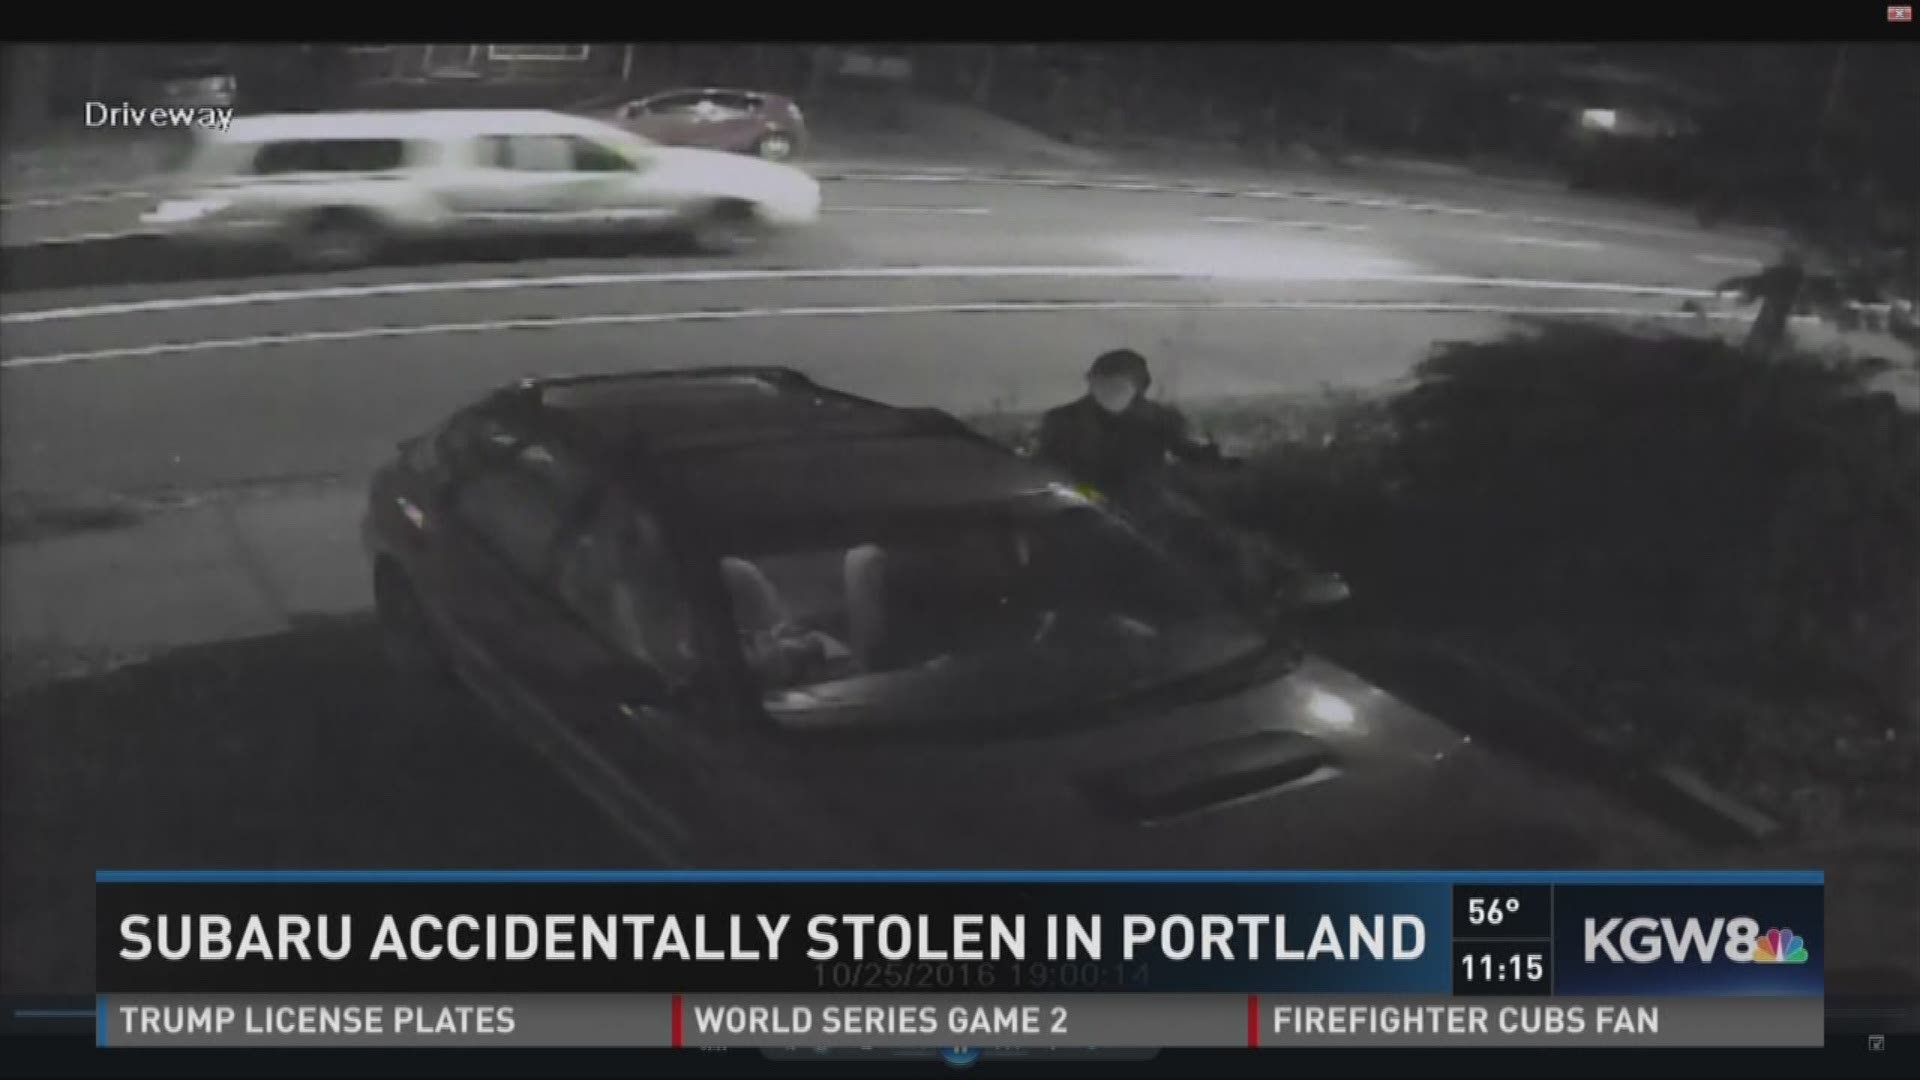 Subaru accidentally stolen in Portland